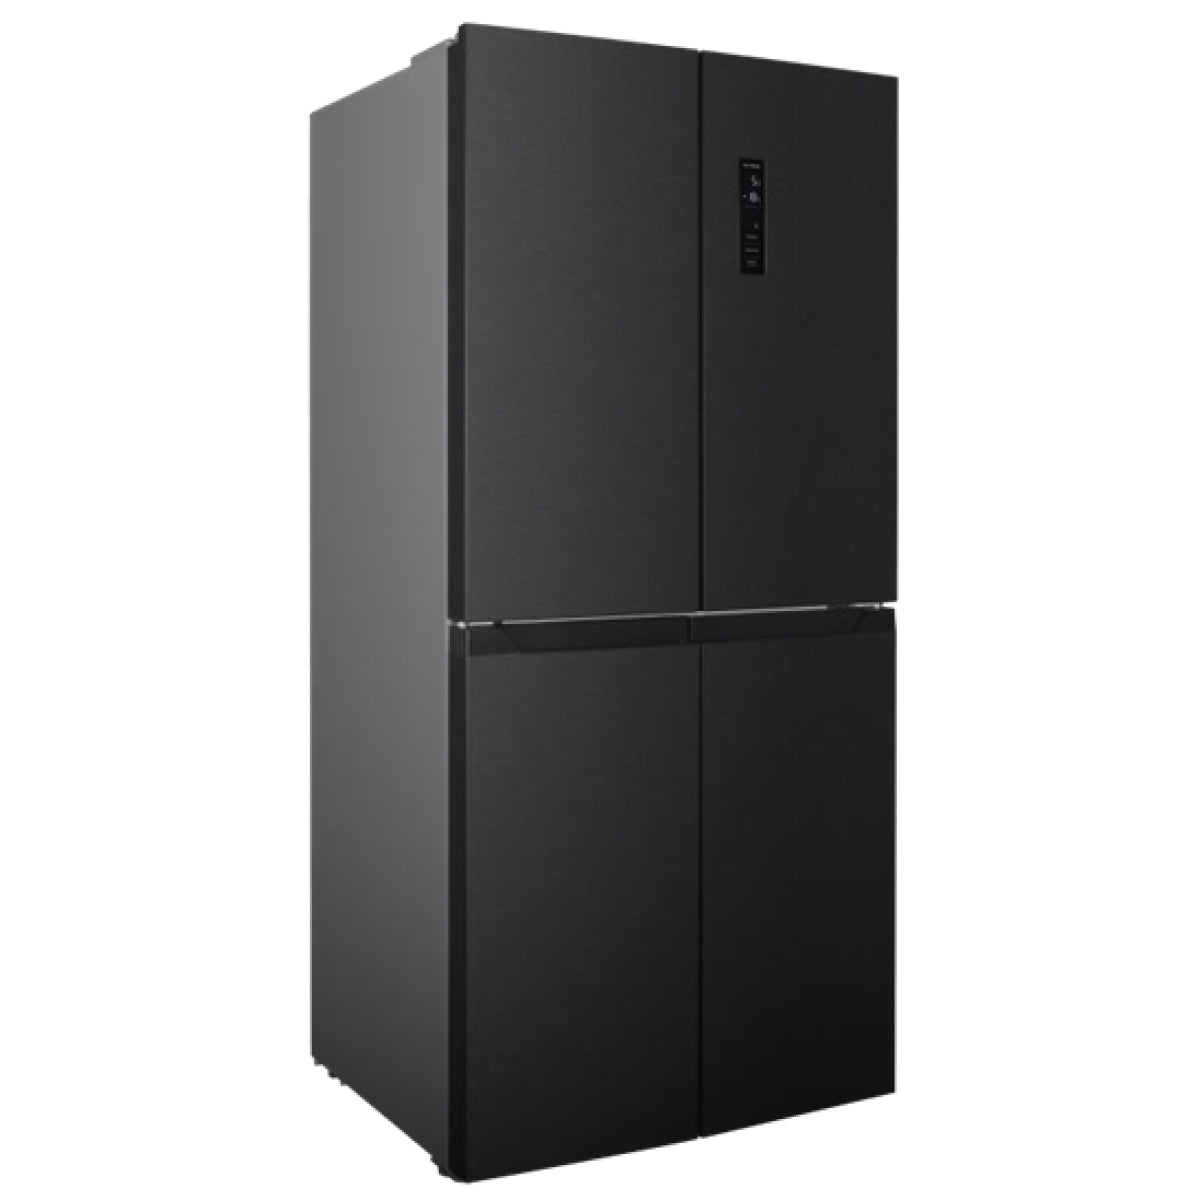 Bruhm 575 Liters French Door Refrigerator BFQ-592EN